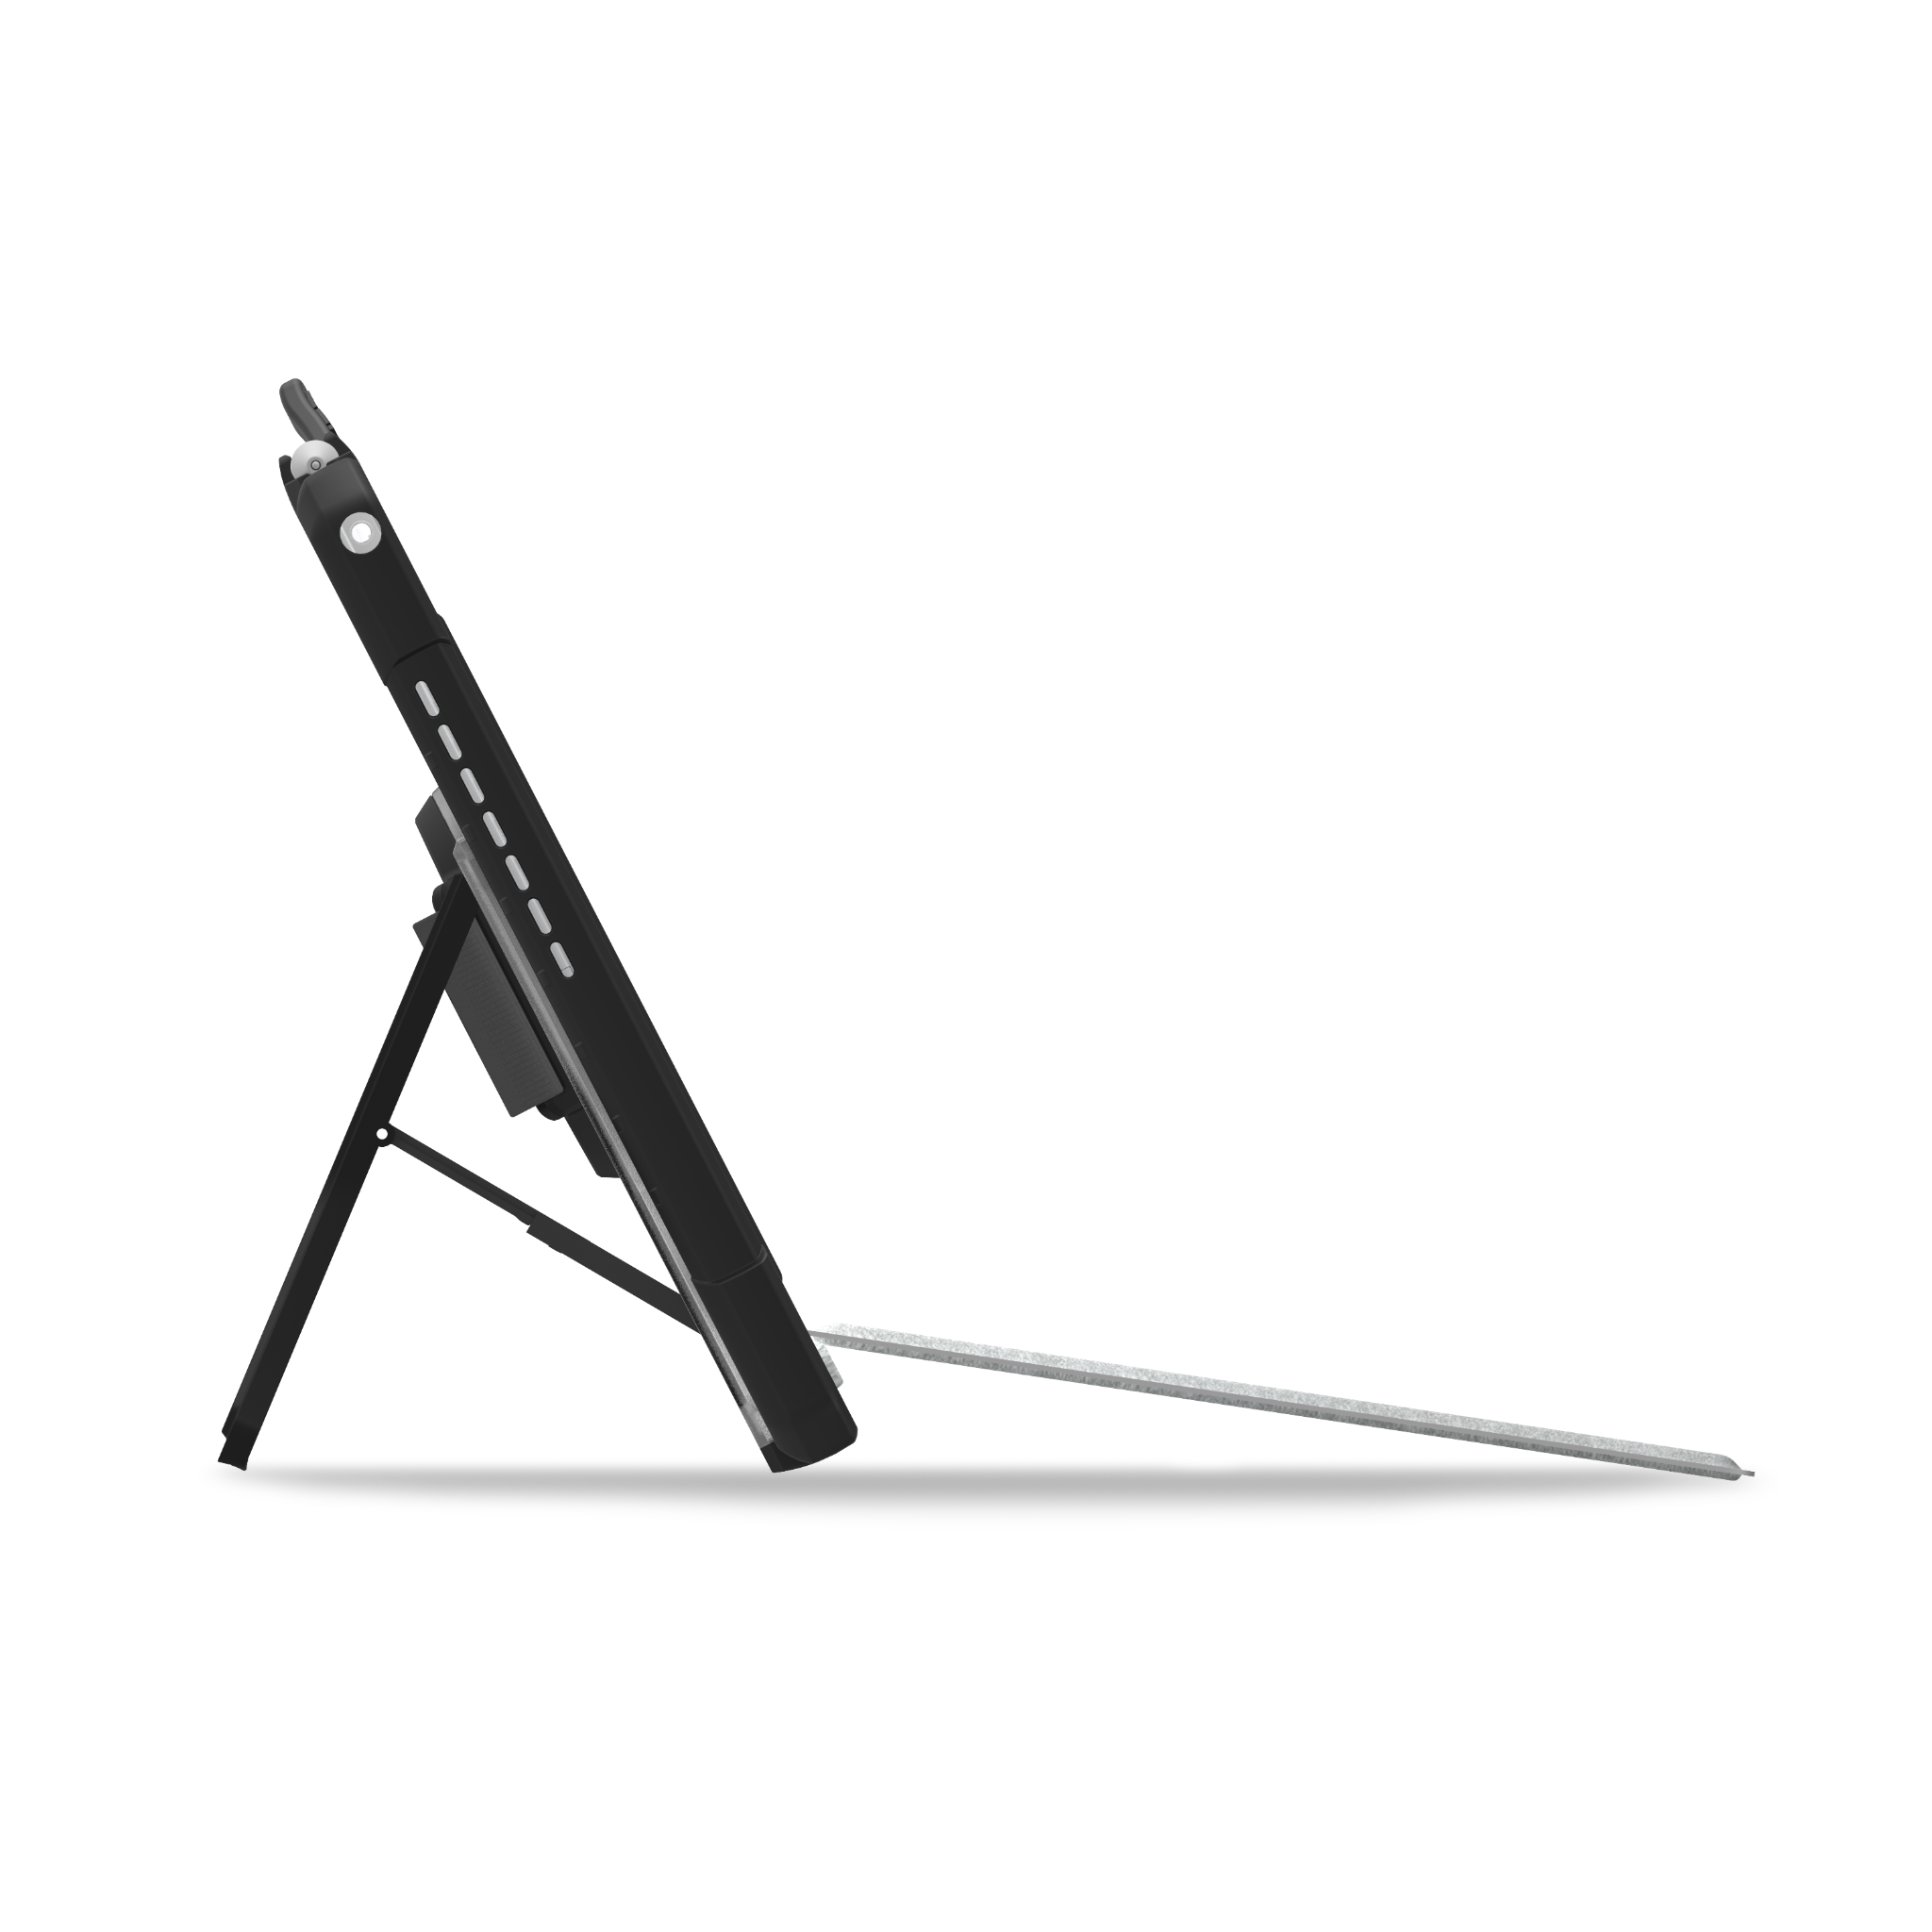  Ốp lưng UAG Plasma cho Microsoft Surface Pro 7/6/5/4 có Quai xách và Dây đeo 